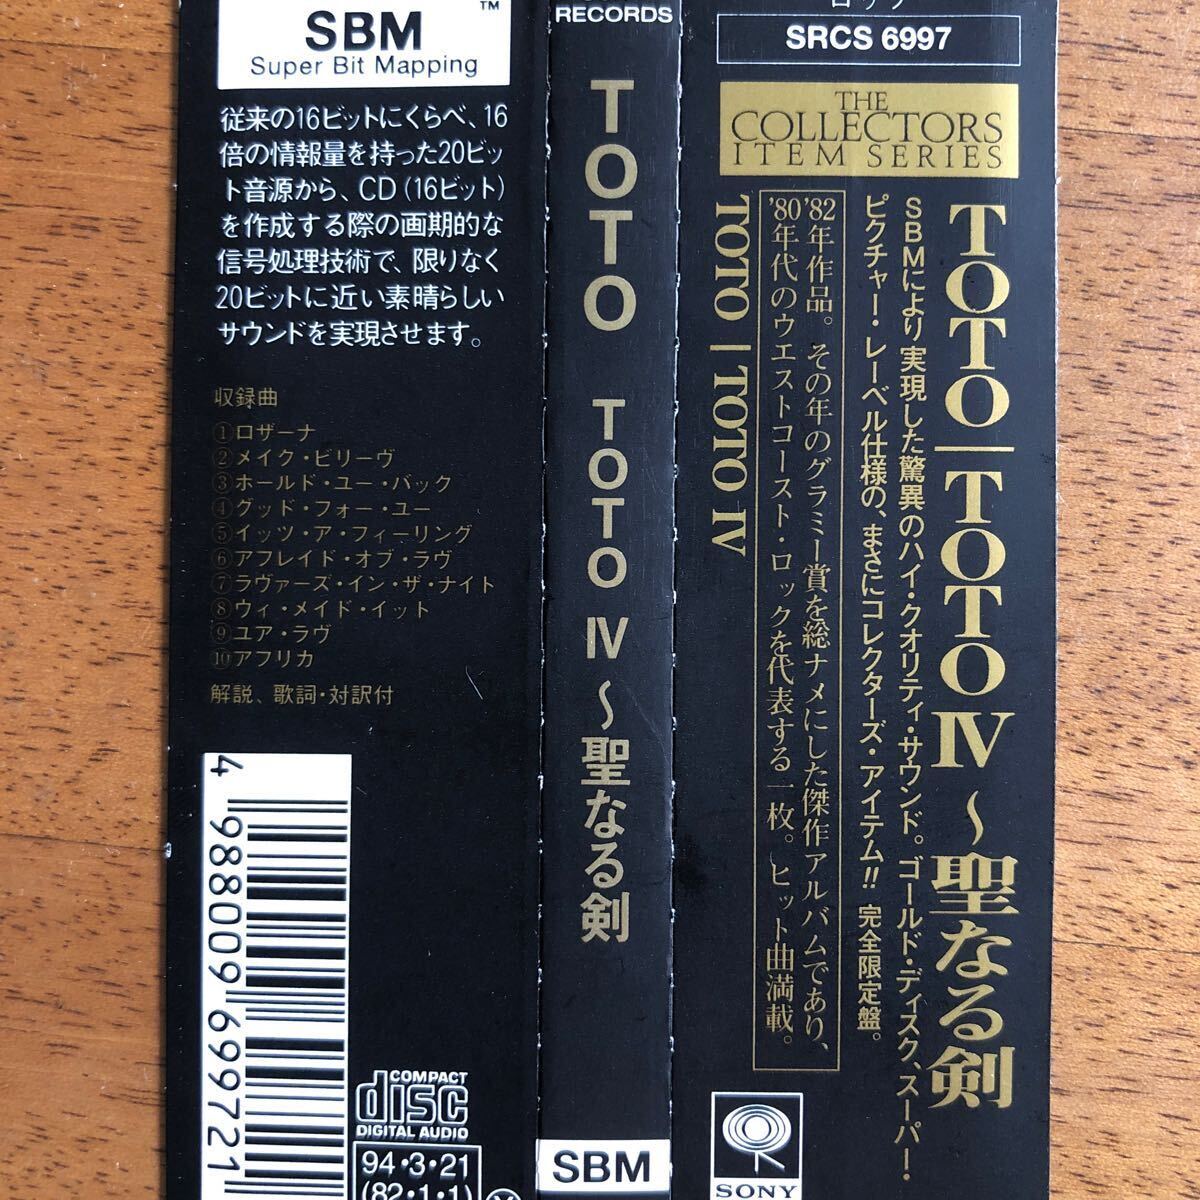  прекрасный товар [ Gold CD]*TOTO{TOTO Ⅳ. становится .}* записано в Японии стоимость доставки 4 пункт до 185 иен 